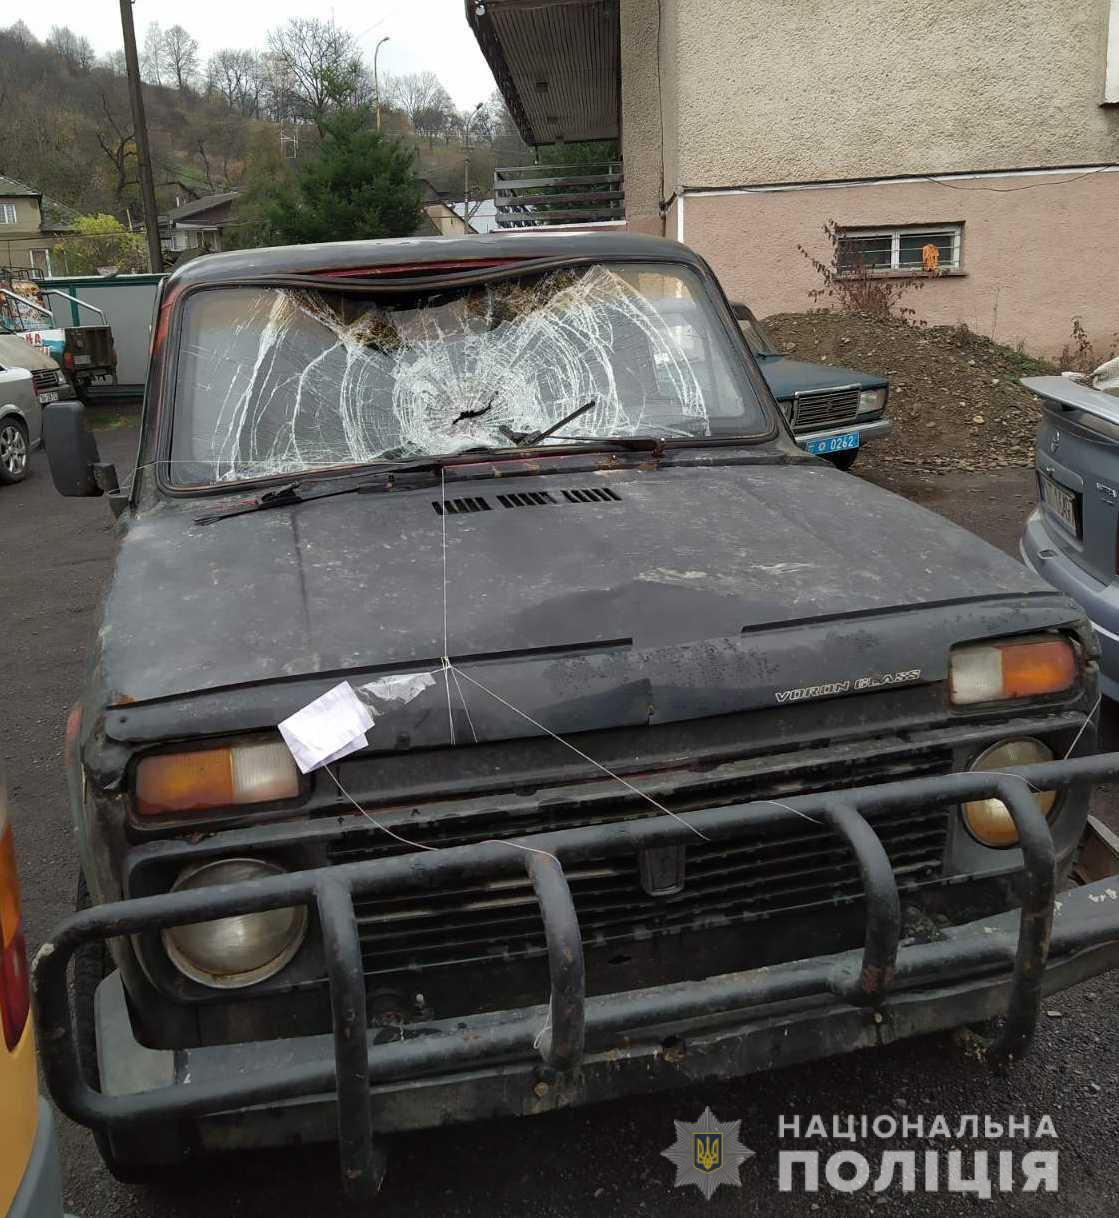 У Дубриничах, на Переченщині водій ВАЗу збив односельця й, перелякавшись, утік (ФОТО)